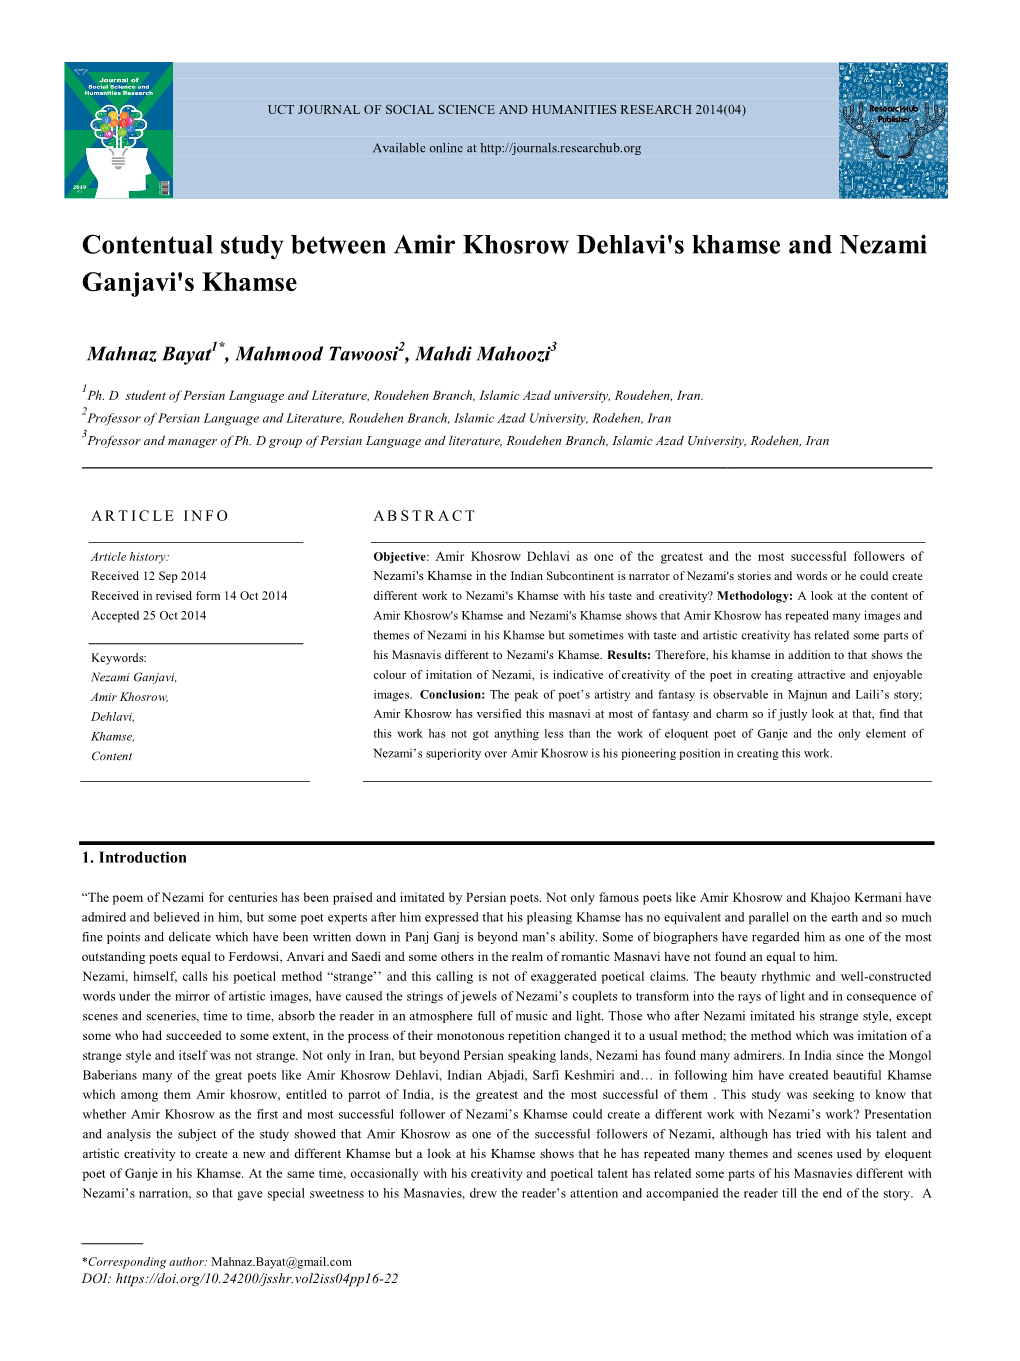 Contentual Study Between Amir Khosrow Dehlavi's Khamse and Nezami Ganjavi's Khamse